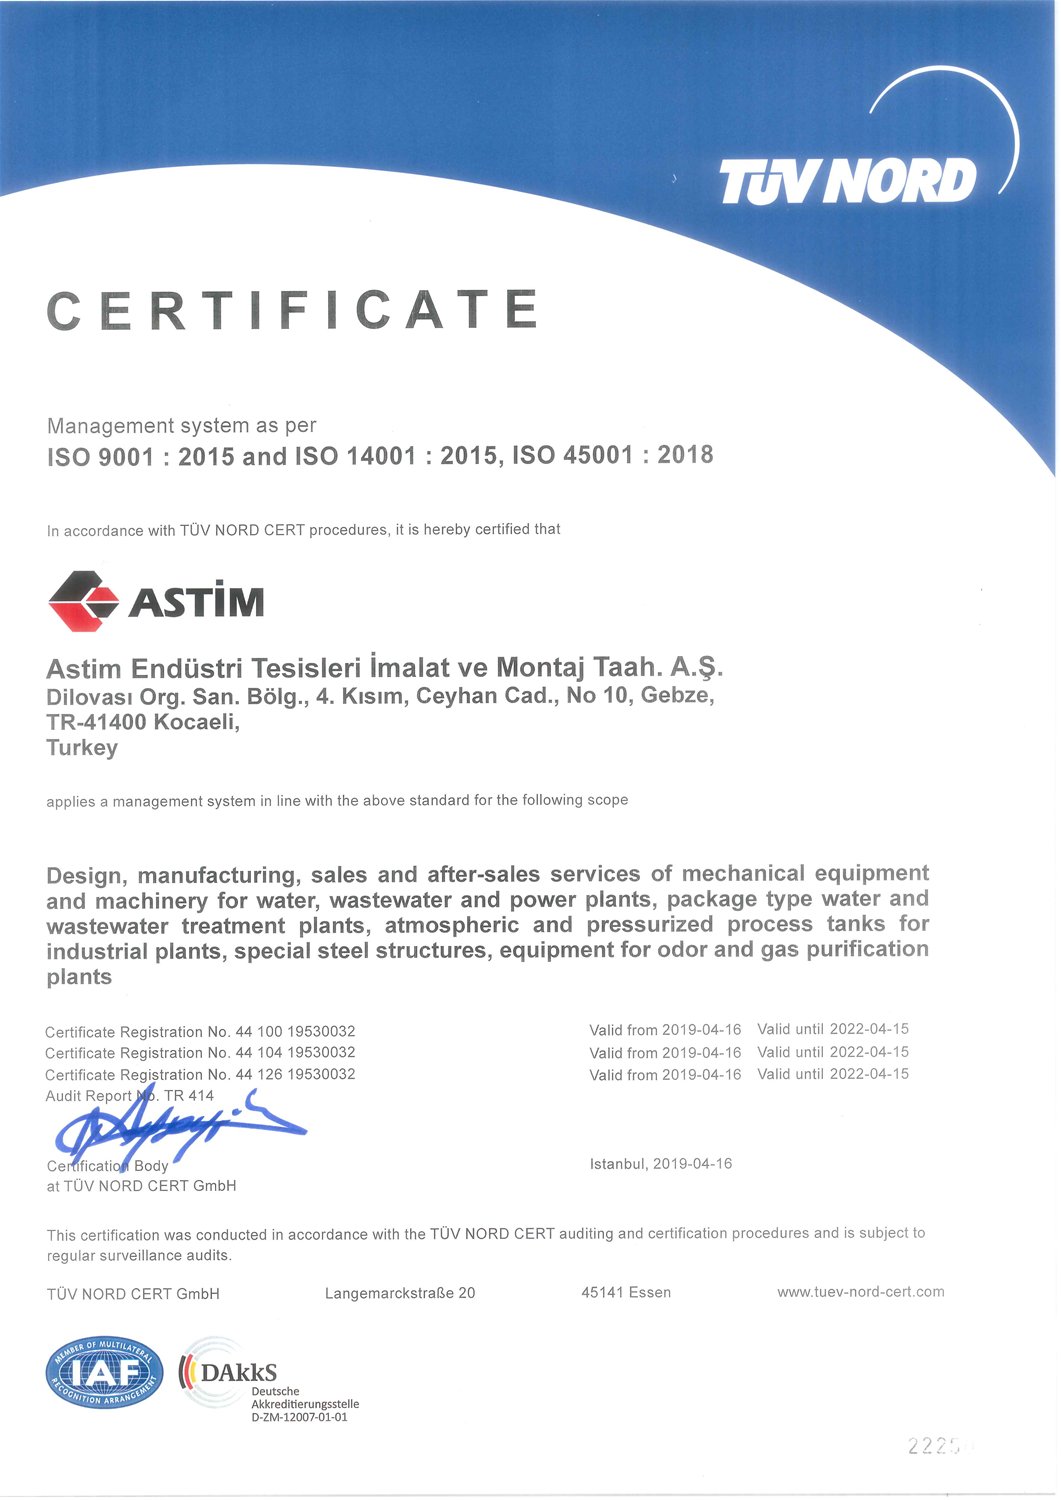 DIN EN ISO 9001/14001/45001:2015